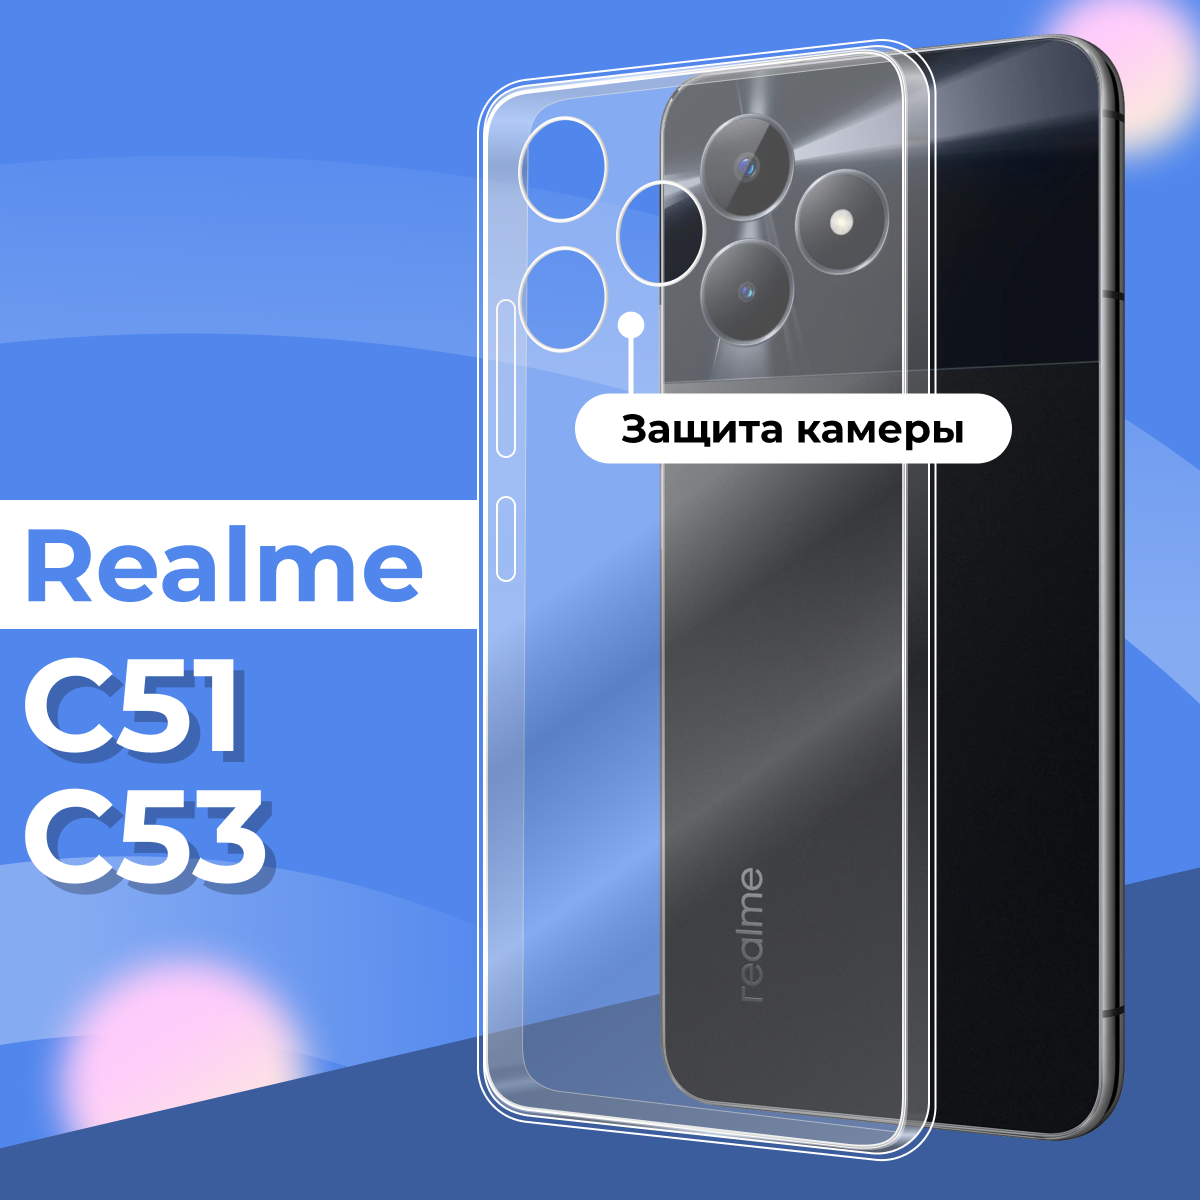 Прозрачный силиконовый чехол с защитой камеры для Realme C51 и Realme C53 / Тонкий противоударный легкий чехол на телефон Реалми С51 и Реалми С53